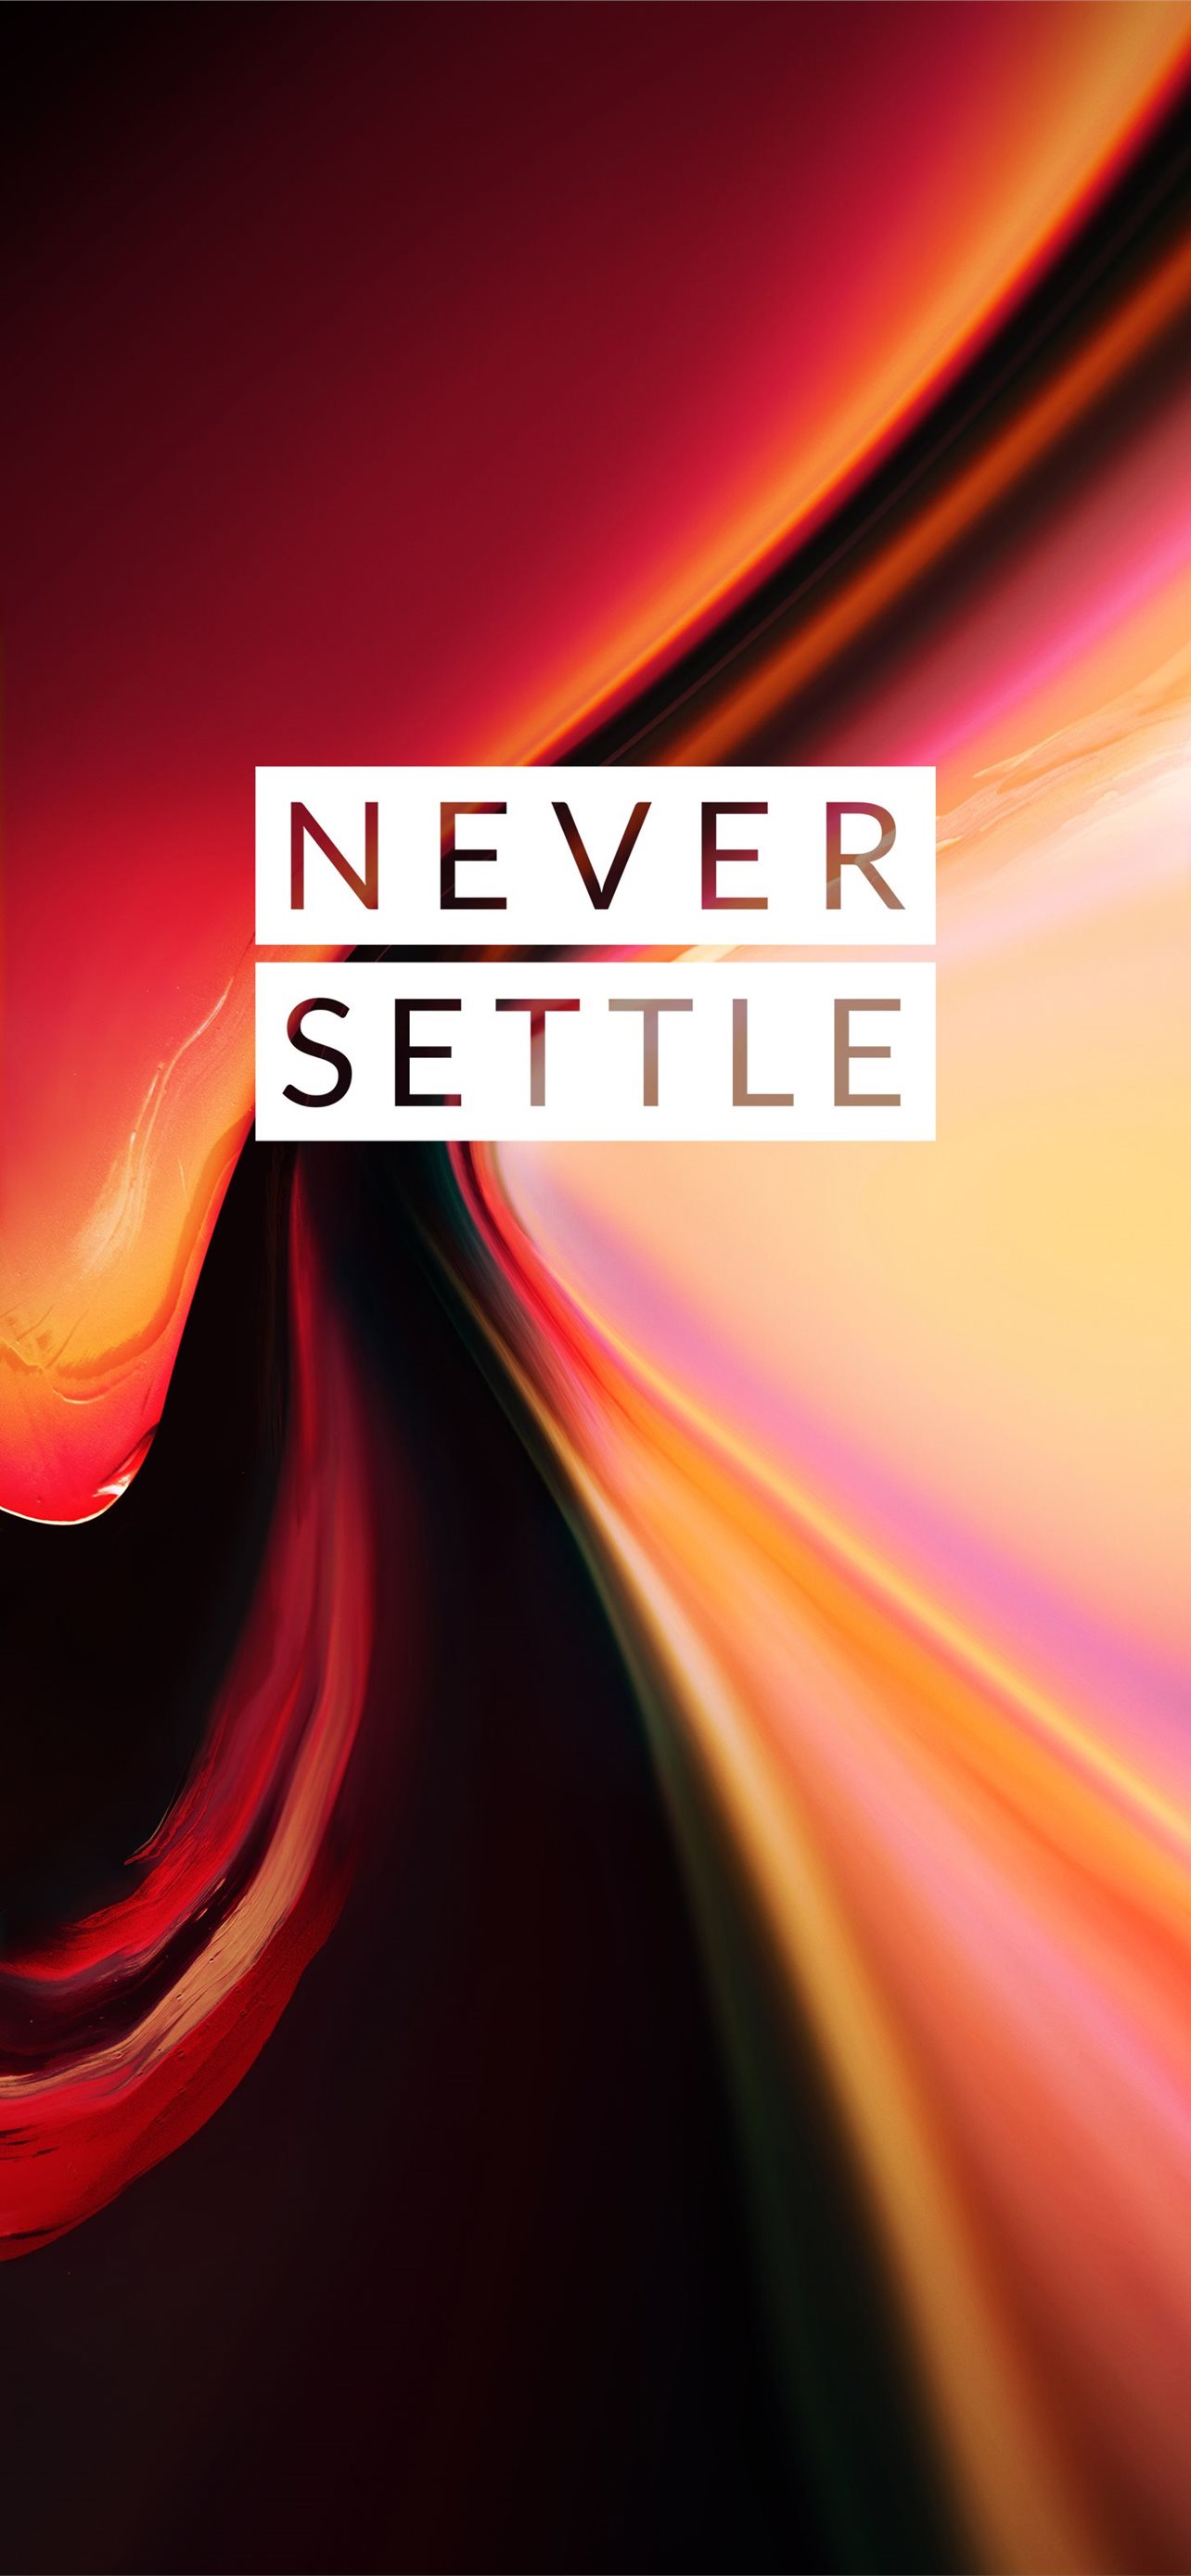 Oneplus never settle, abstract, desenho, never settle, neversettle, one  plus, HD phone wallpaper | Peakpx